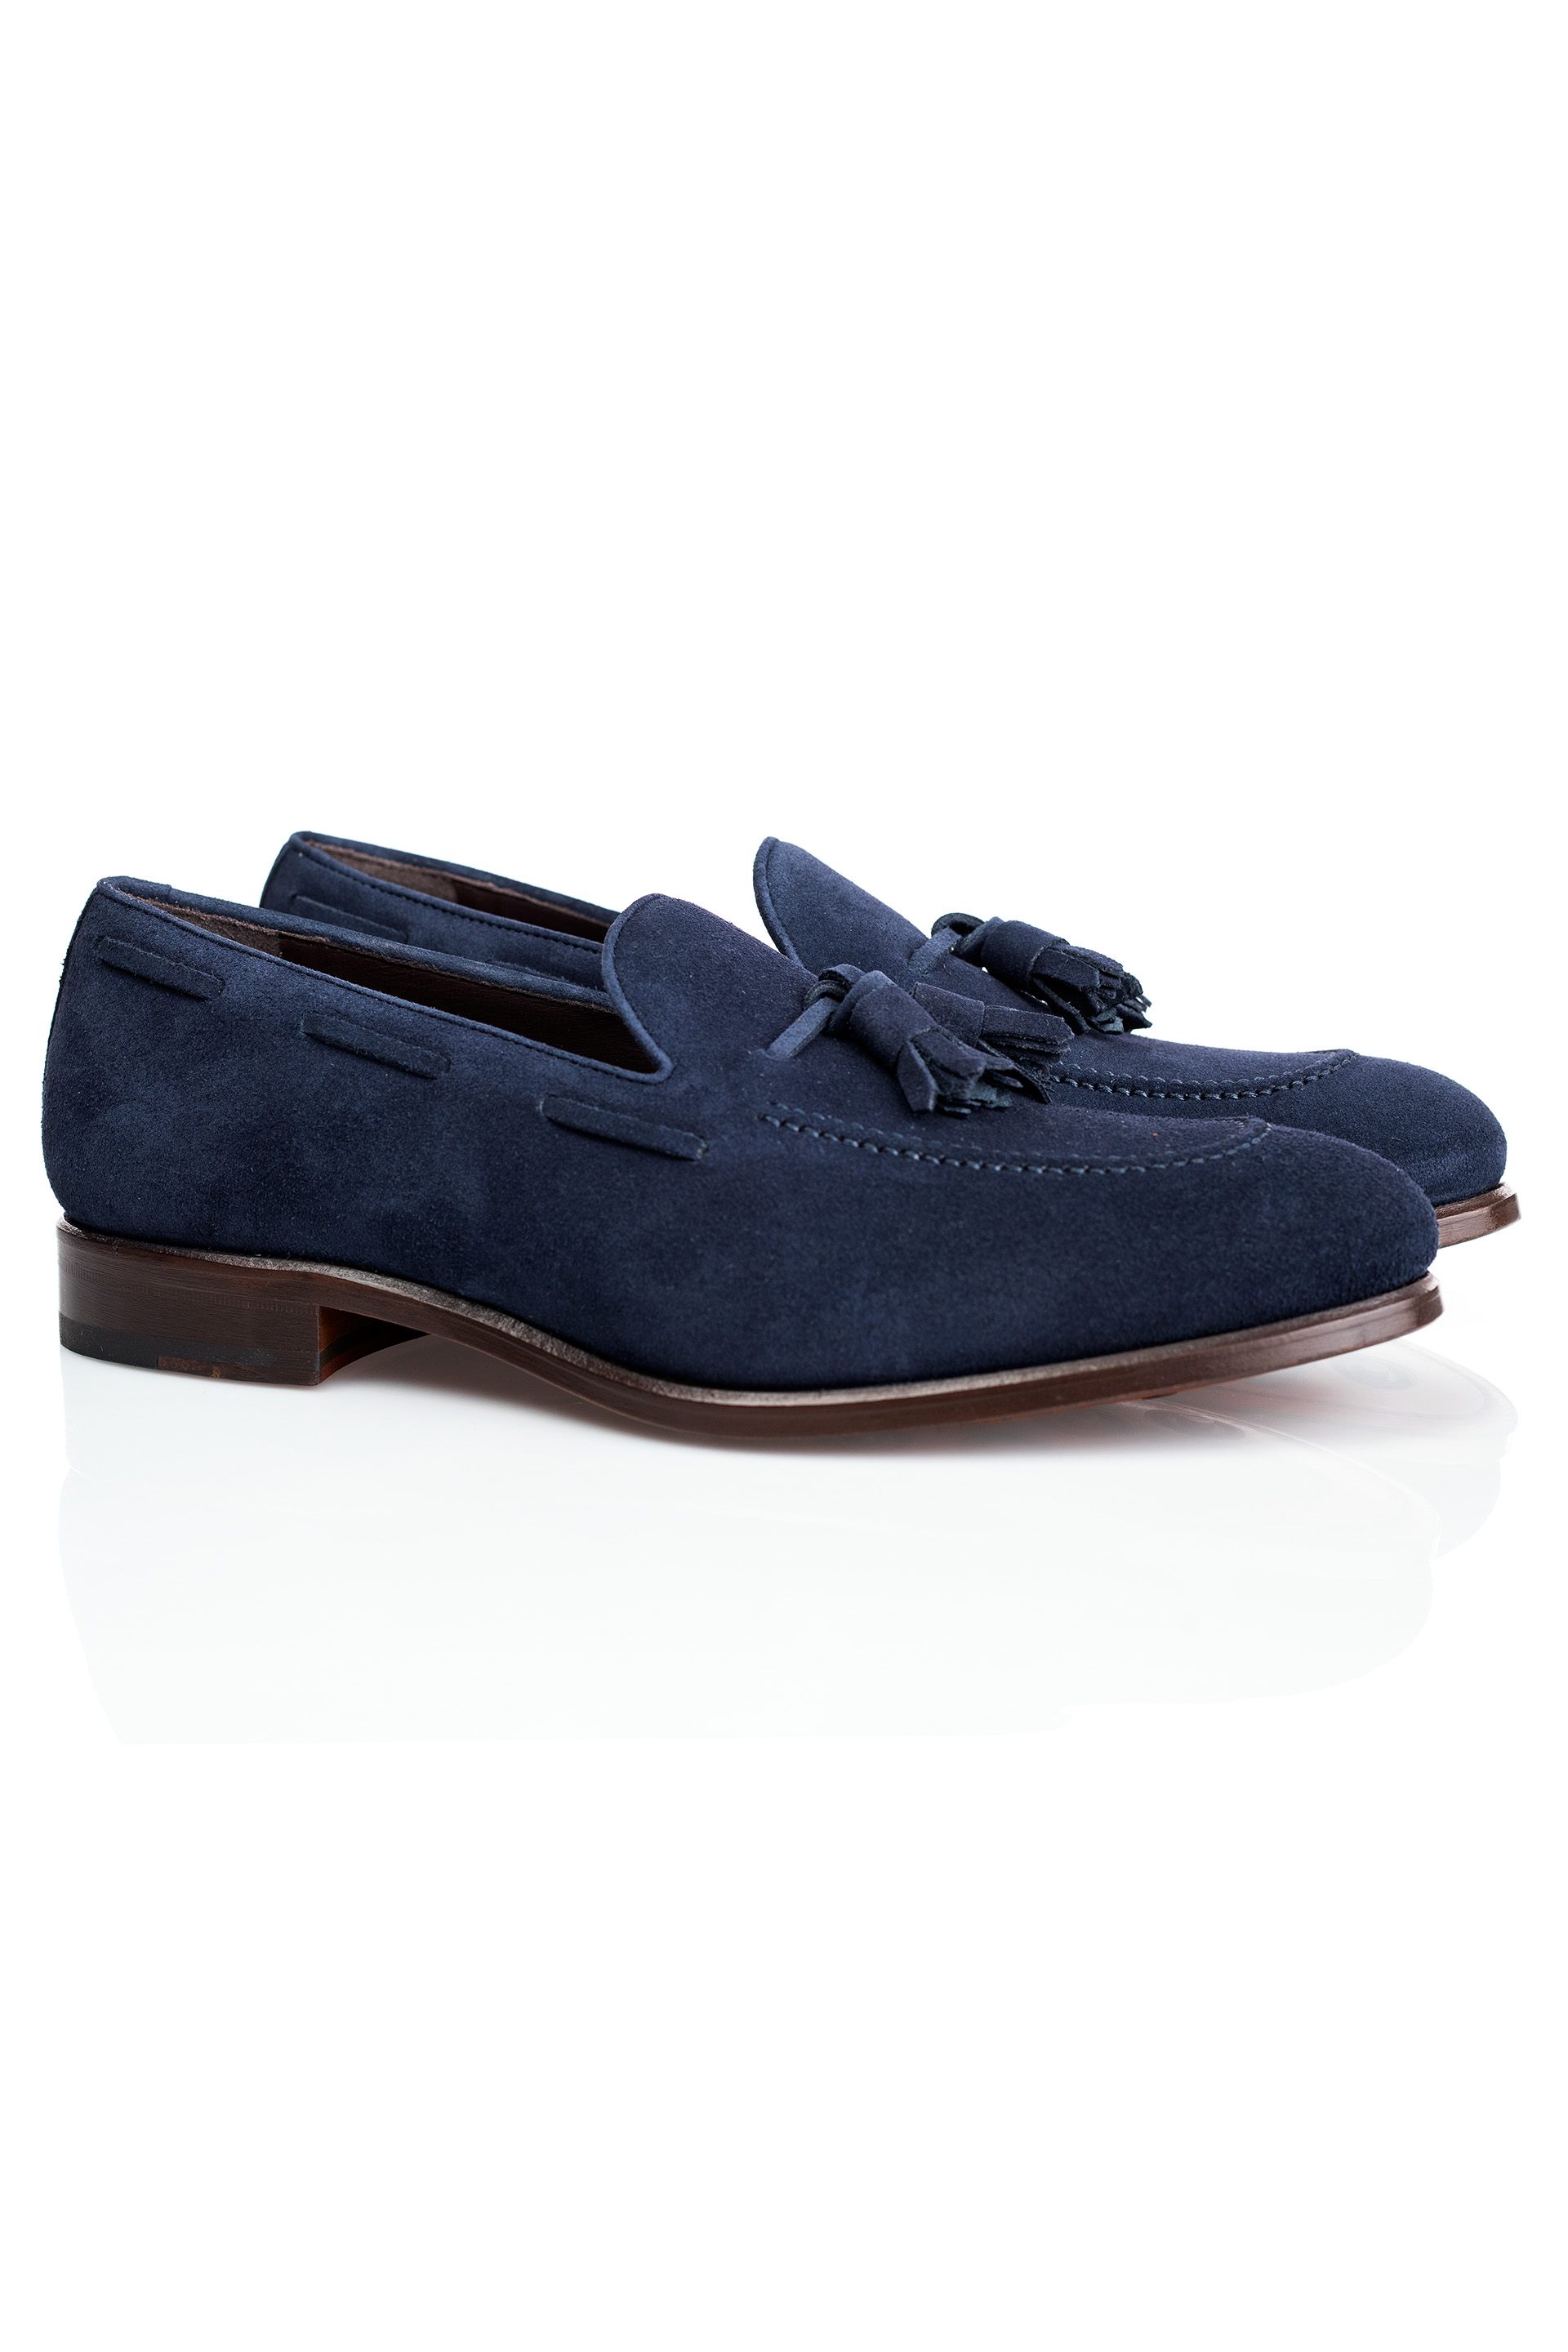 Elegant Men's Navy Suede Loafer Shoes - Tudor Tailor